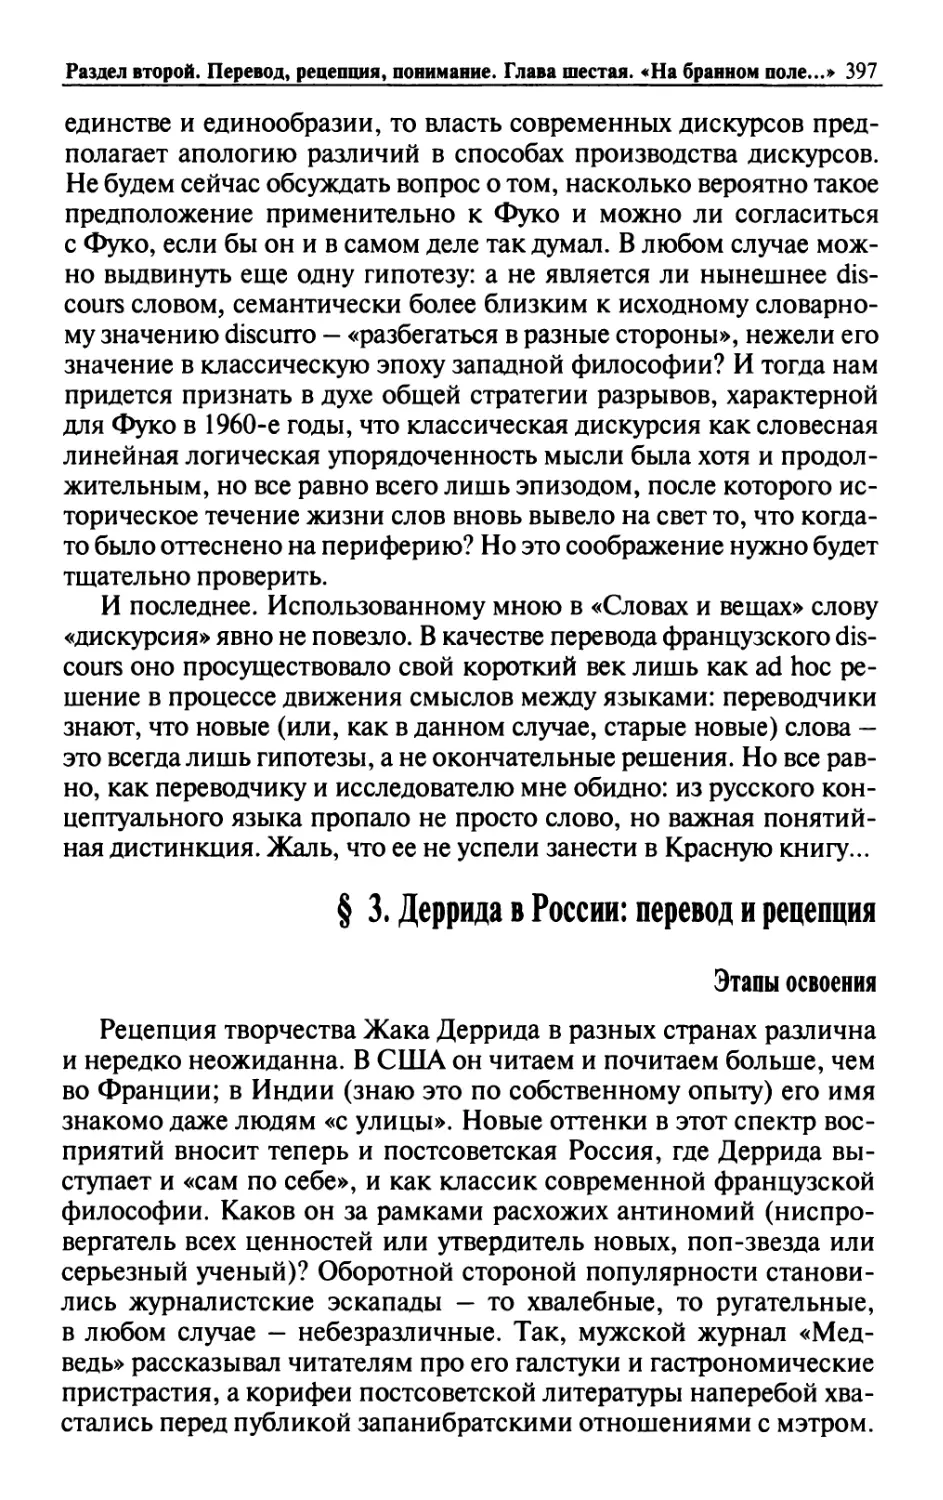 § 3. Деррида в России: перевод и рецепция